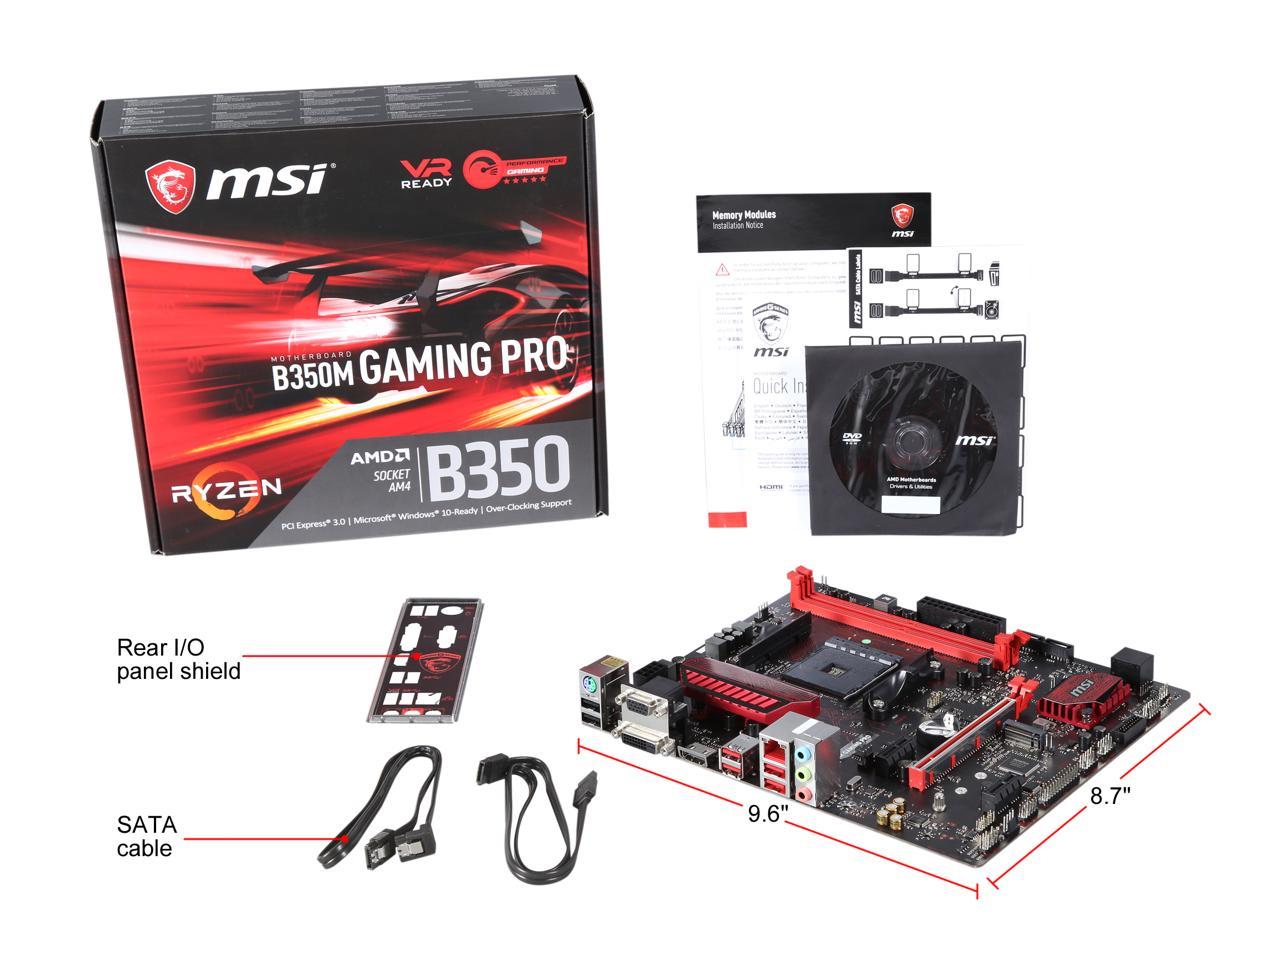 Gaming pro 1. MSI a320m Gaming Pro. MSI b350m Gaming Pro. MSI b350m Gaming Plus. MSI b150a Gaming Pro.